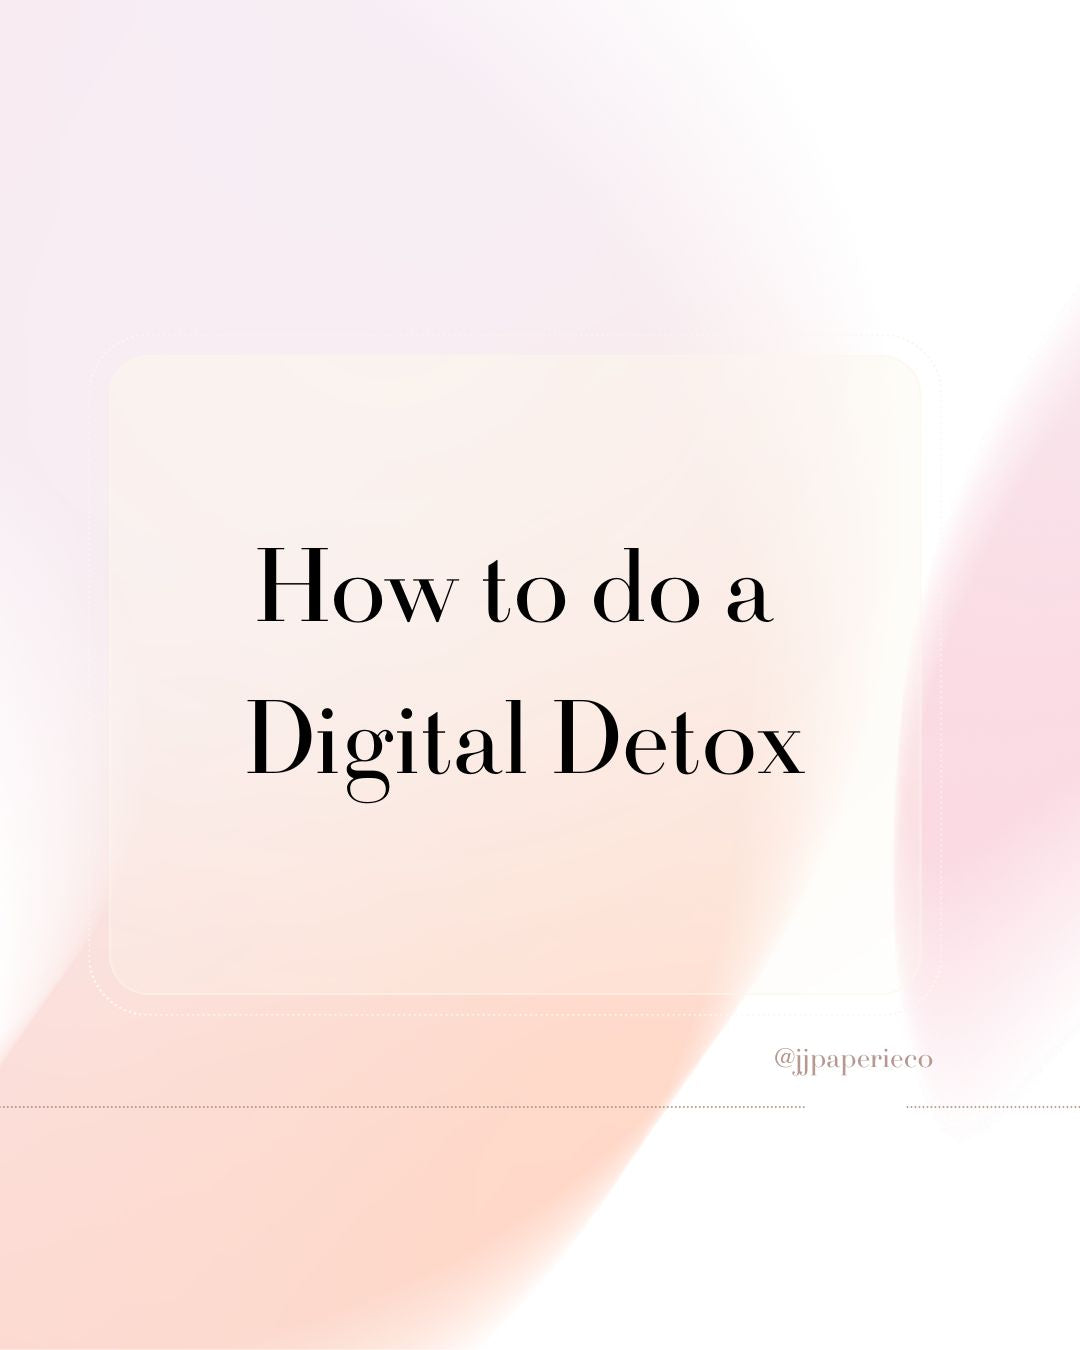 How to do a Digital Detox